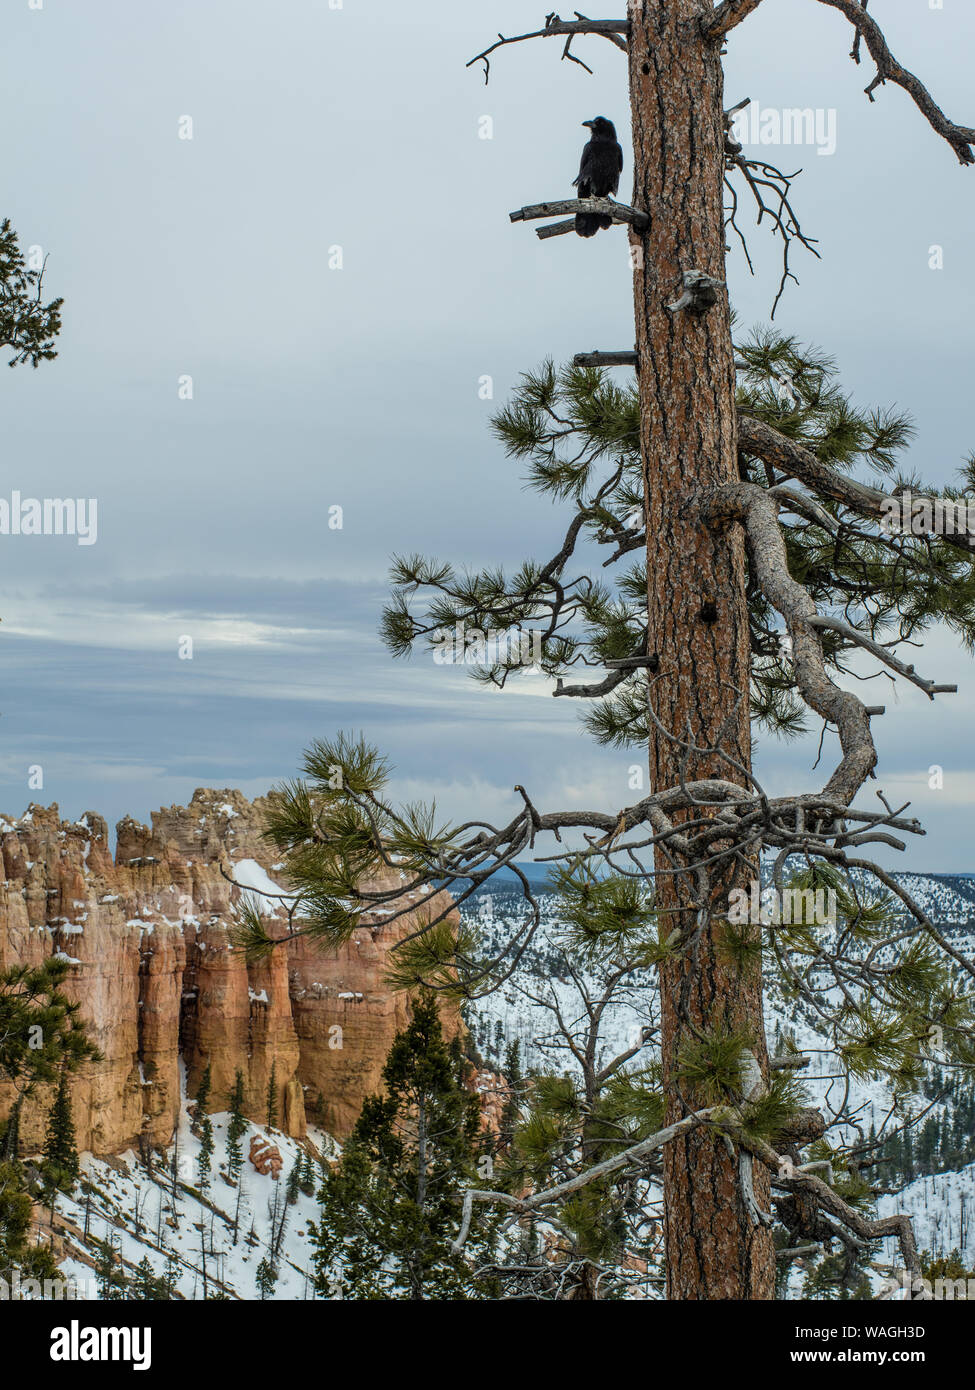 Corvo nero su un pino nel Bryce Canyon. Il pino in primo piano. Coperta di neve canyon, i pinnacoli e le formazioni rocciose al di sotto delle nubi nel cielo Foto Stock